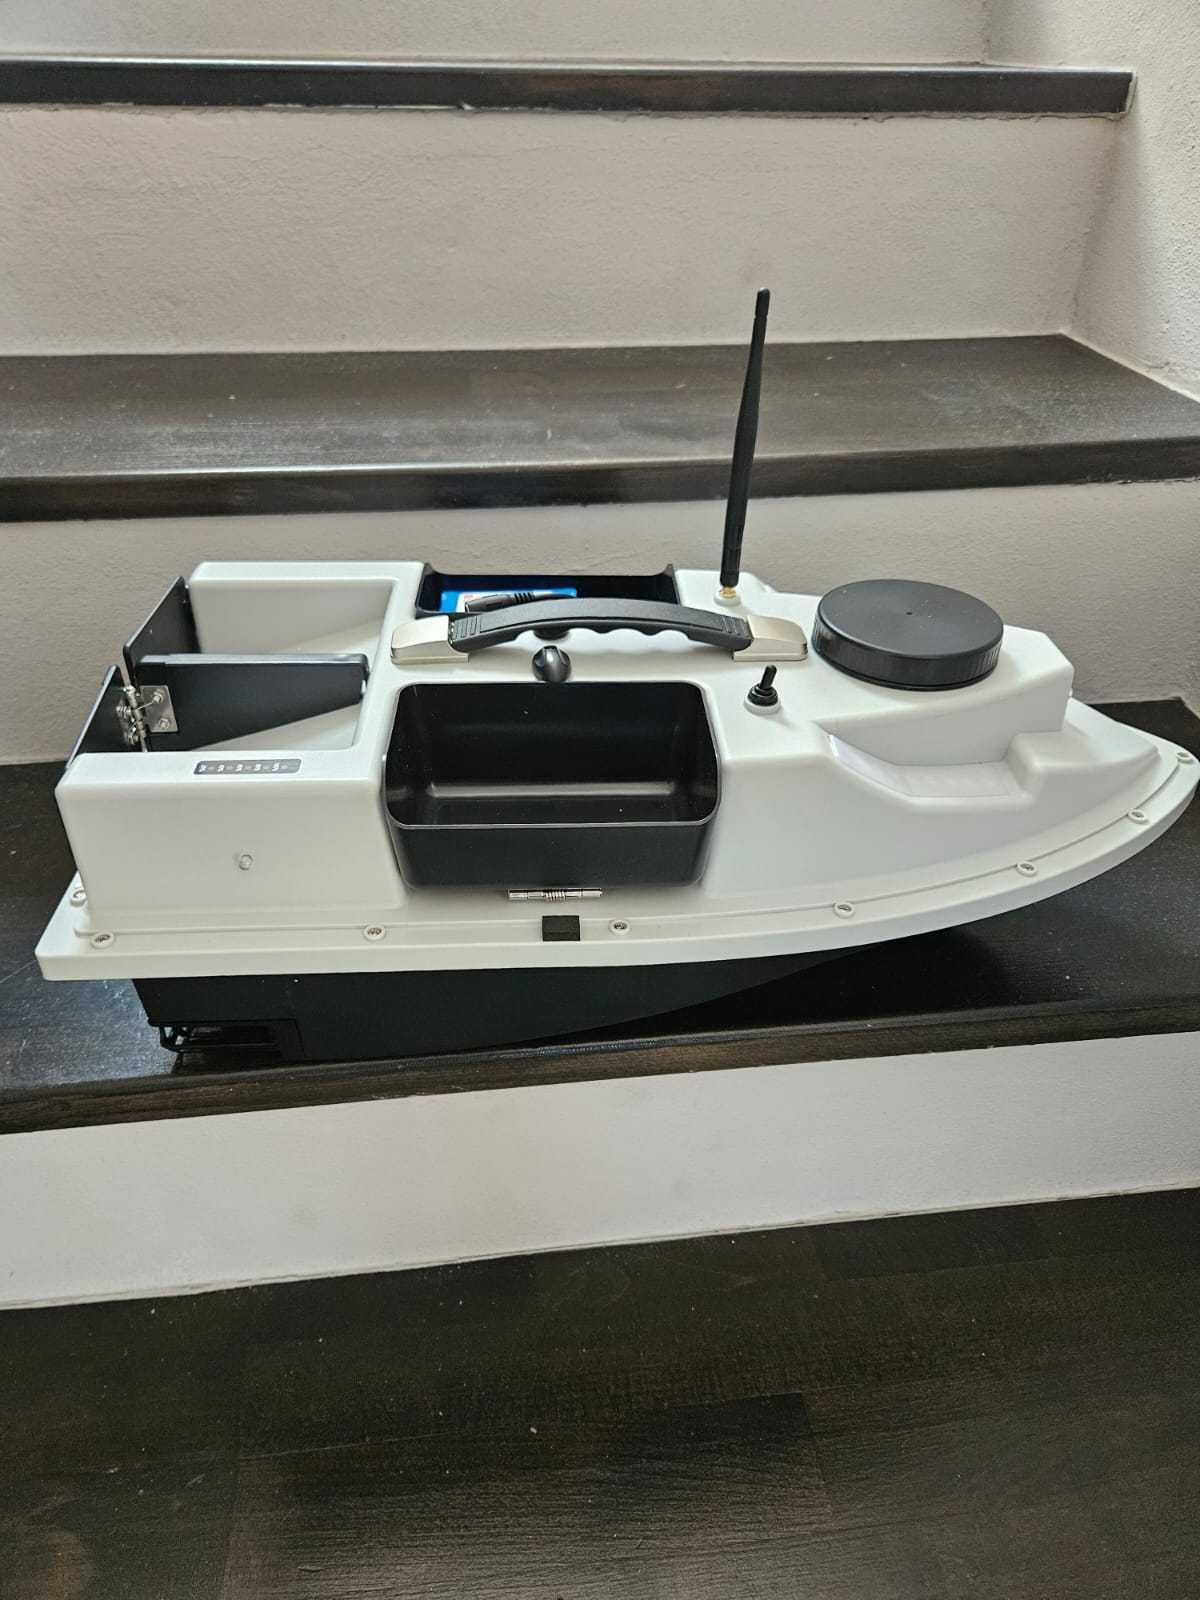 Barca de nadit cu GPS